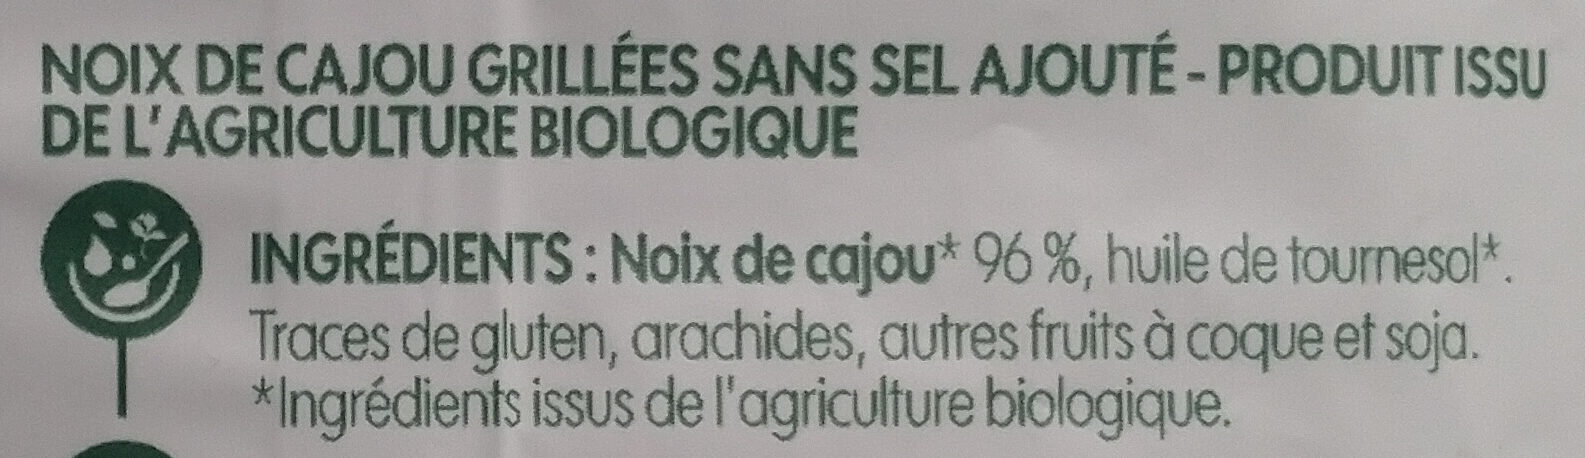 Bio village noix de cajou - Ingrédients